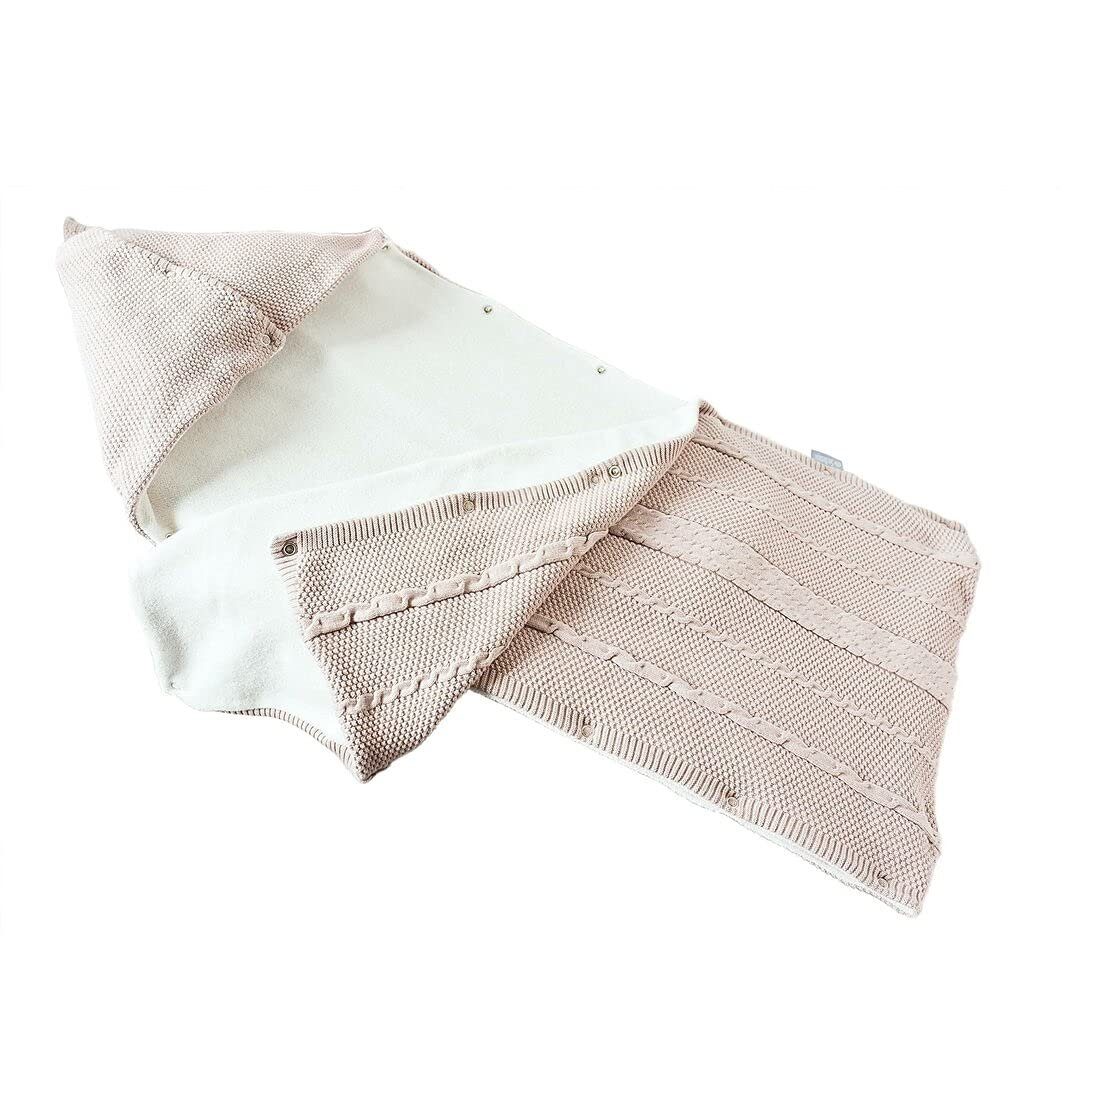 Schlafsack hübscher Natur Geschenk-Verpackung SEI Babydecke 100% Design, Baumwolle, in gestrickt